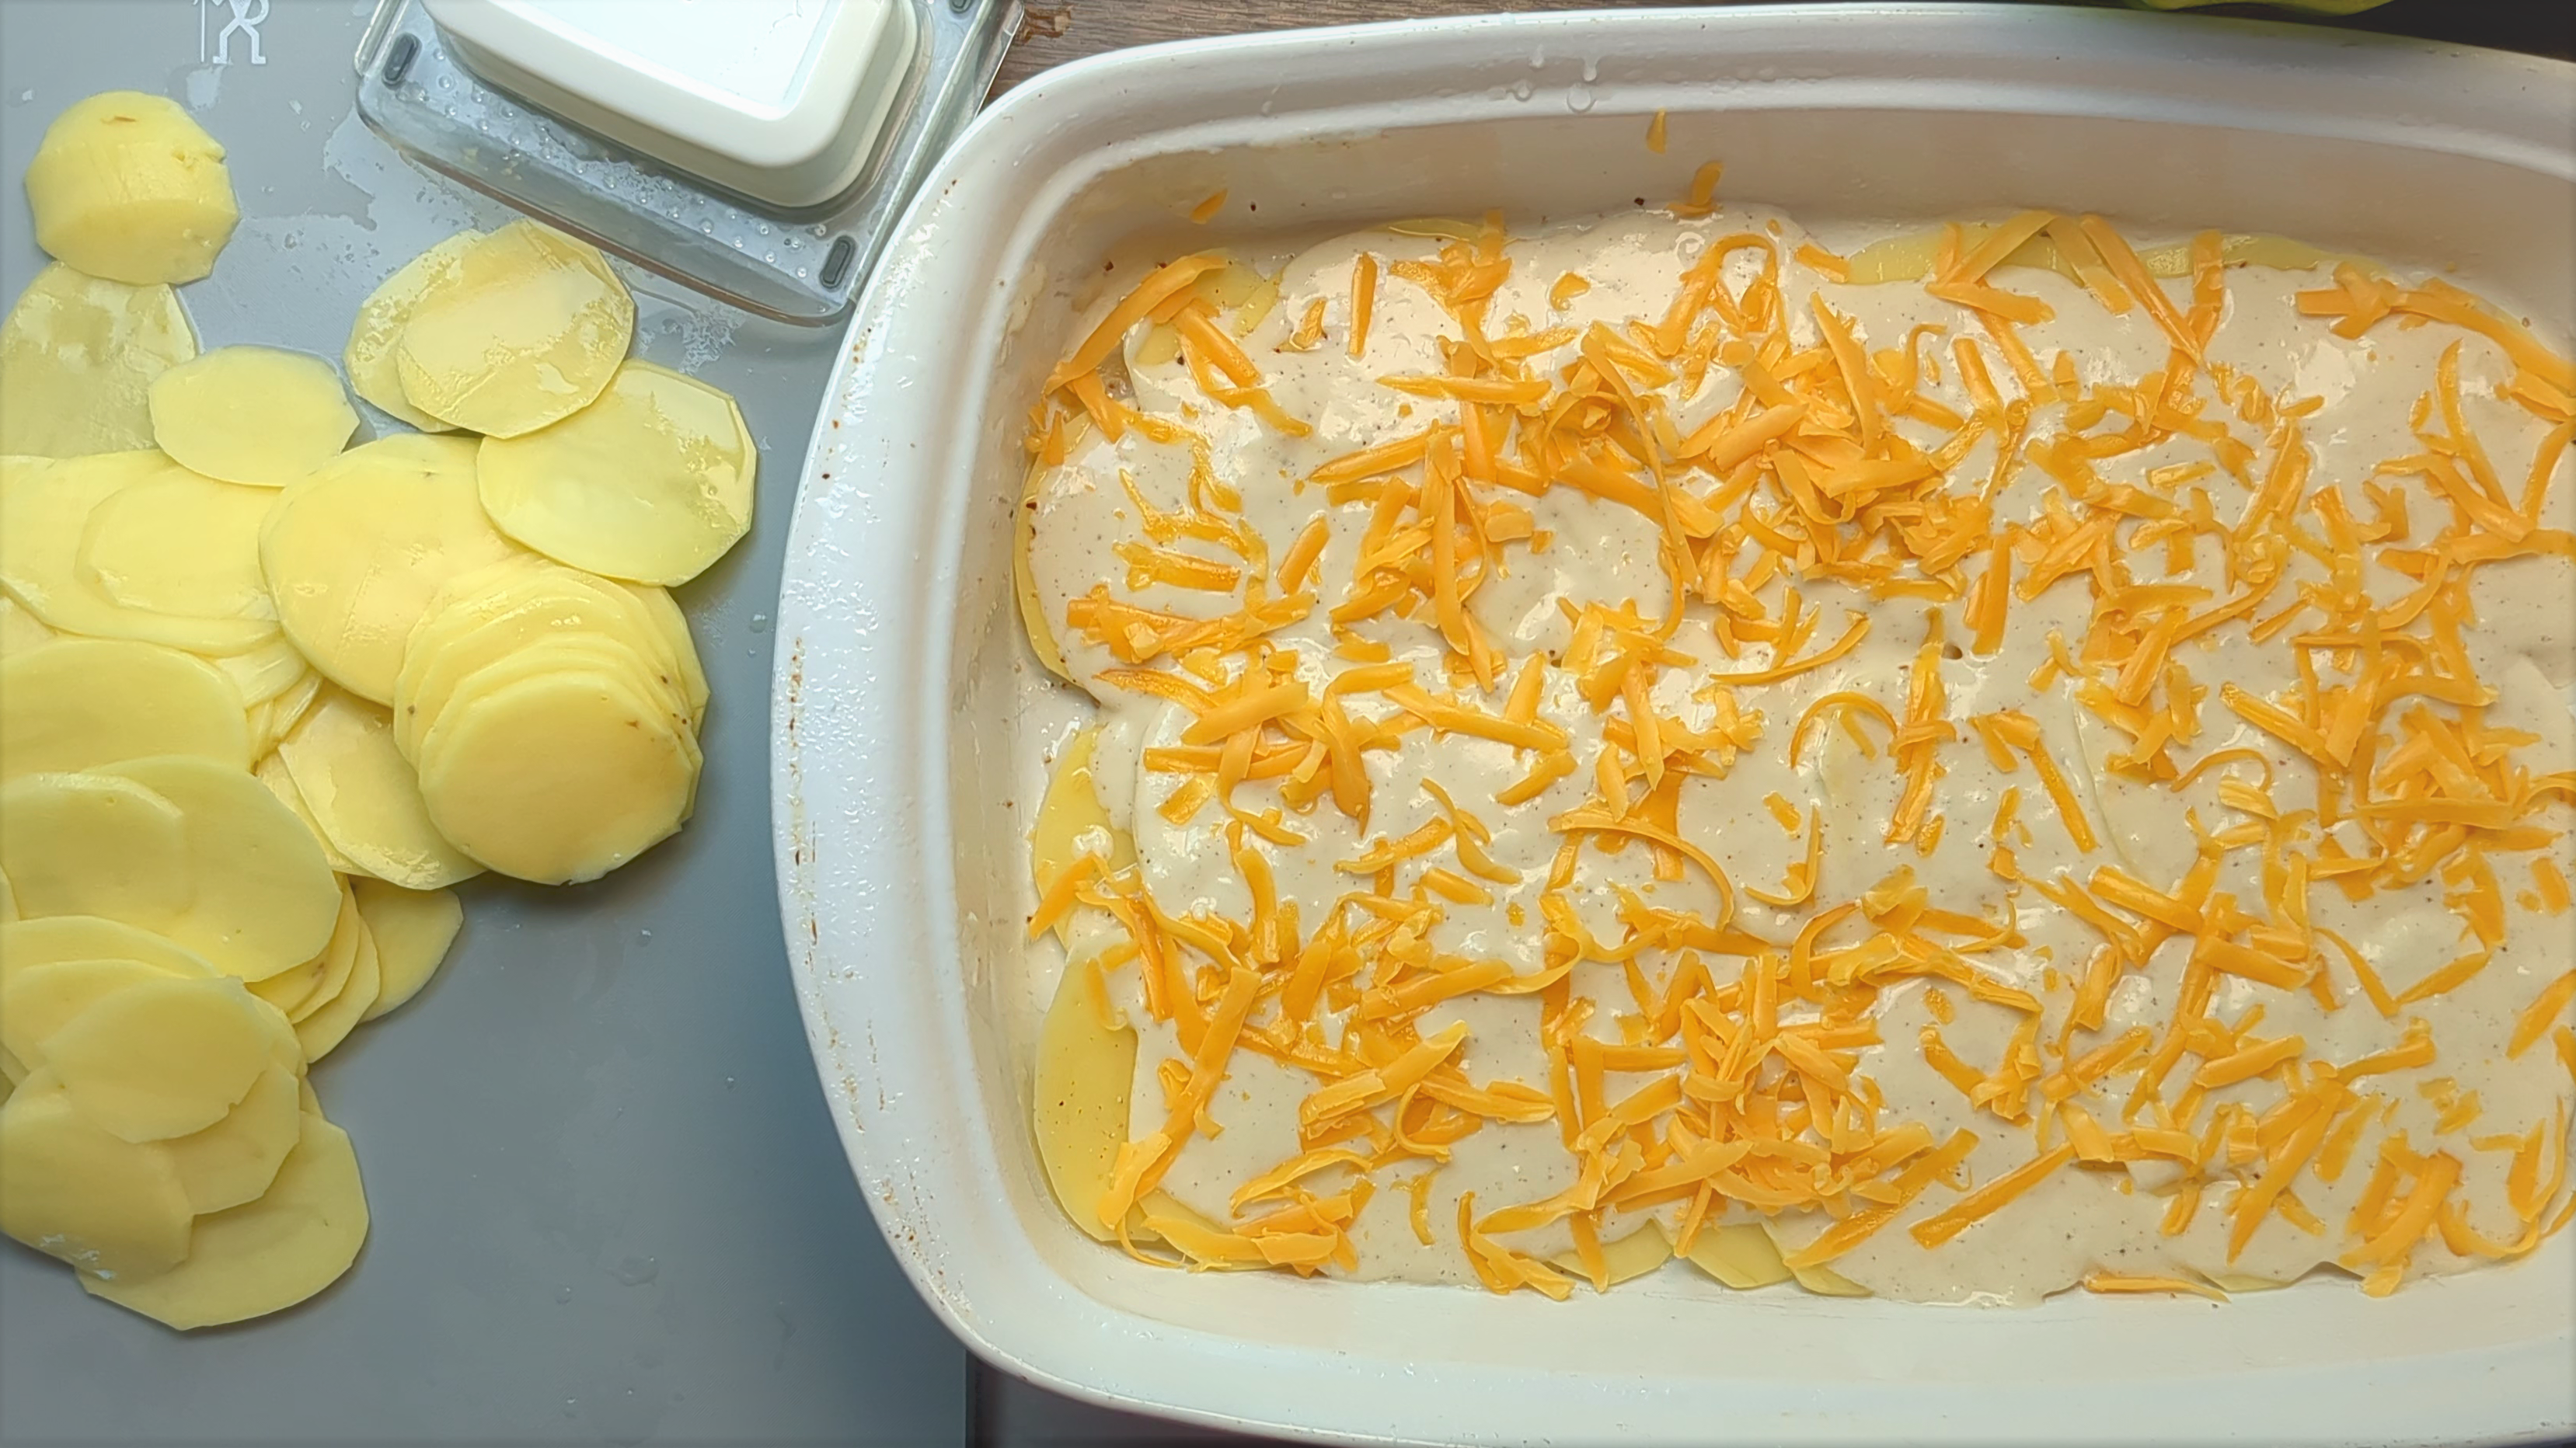 Partially put together Au Gratin dish with mandoline sliced potatoes on side below mandoline slicer